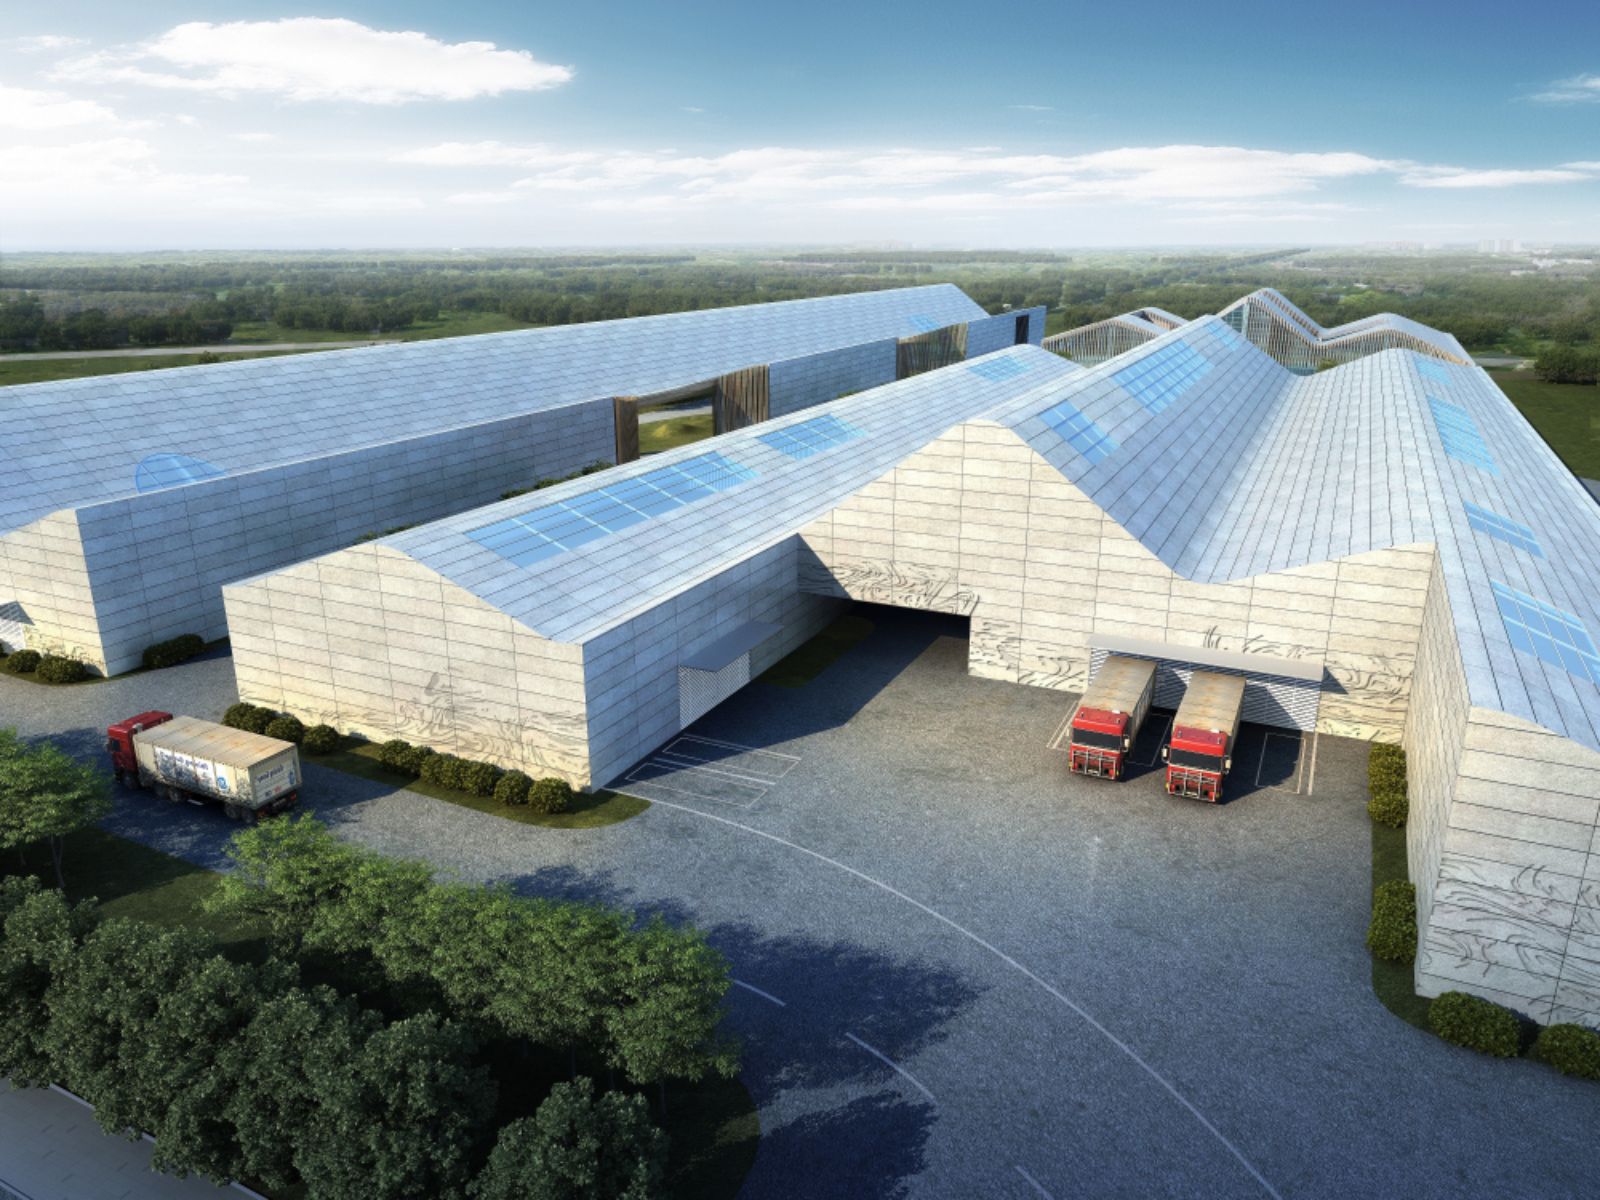 Sichuan International Glass Art Factory & Innovation Centre